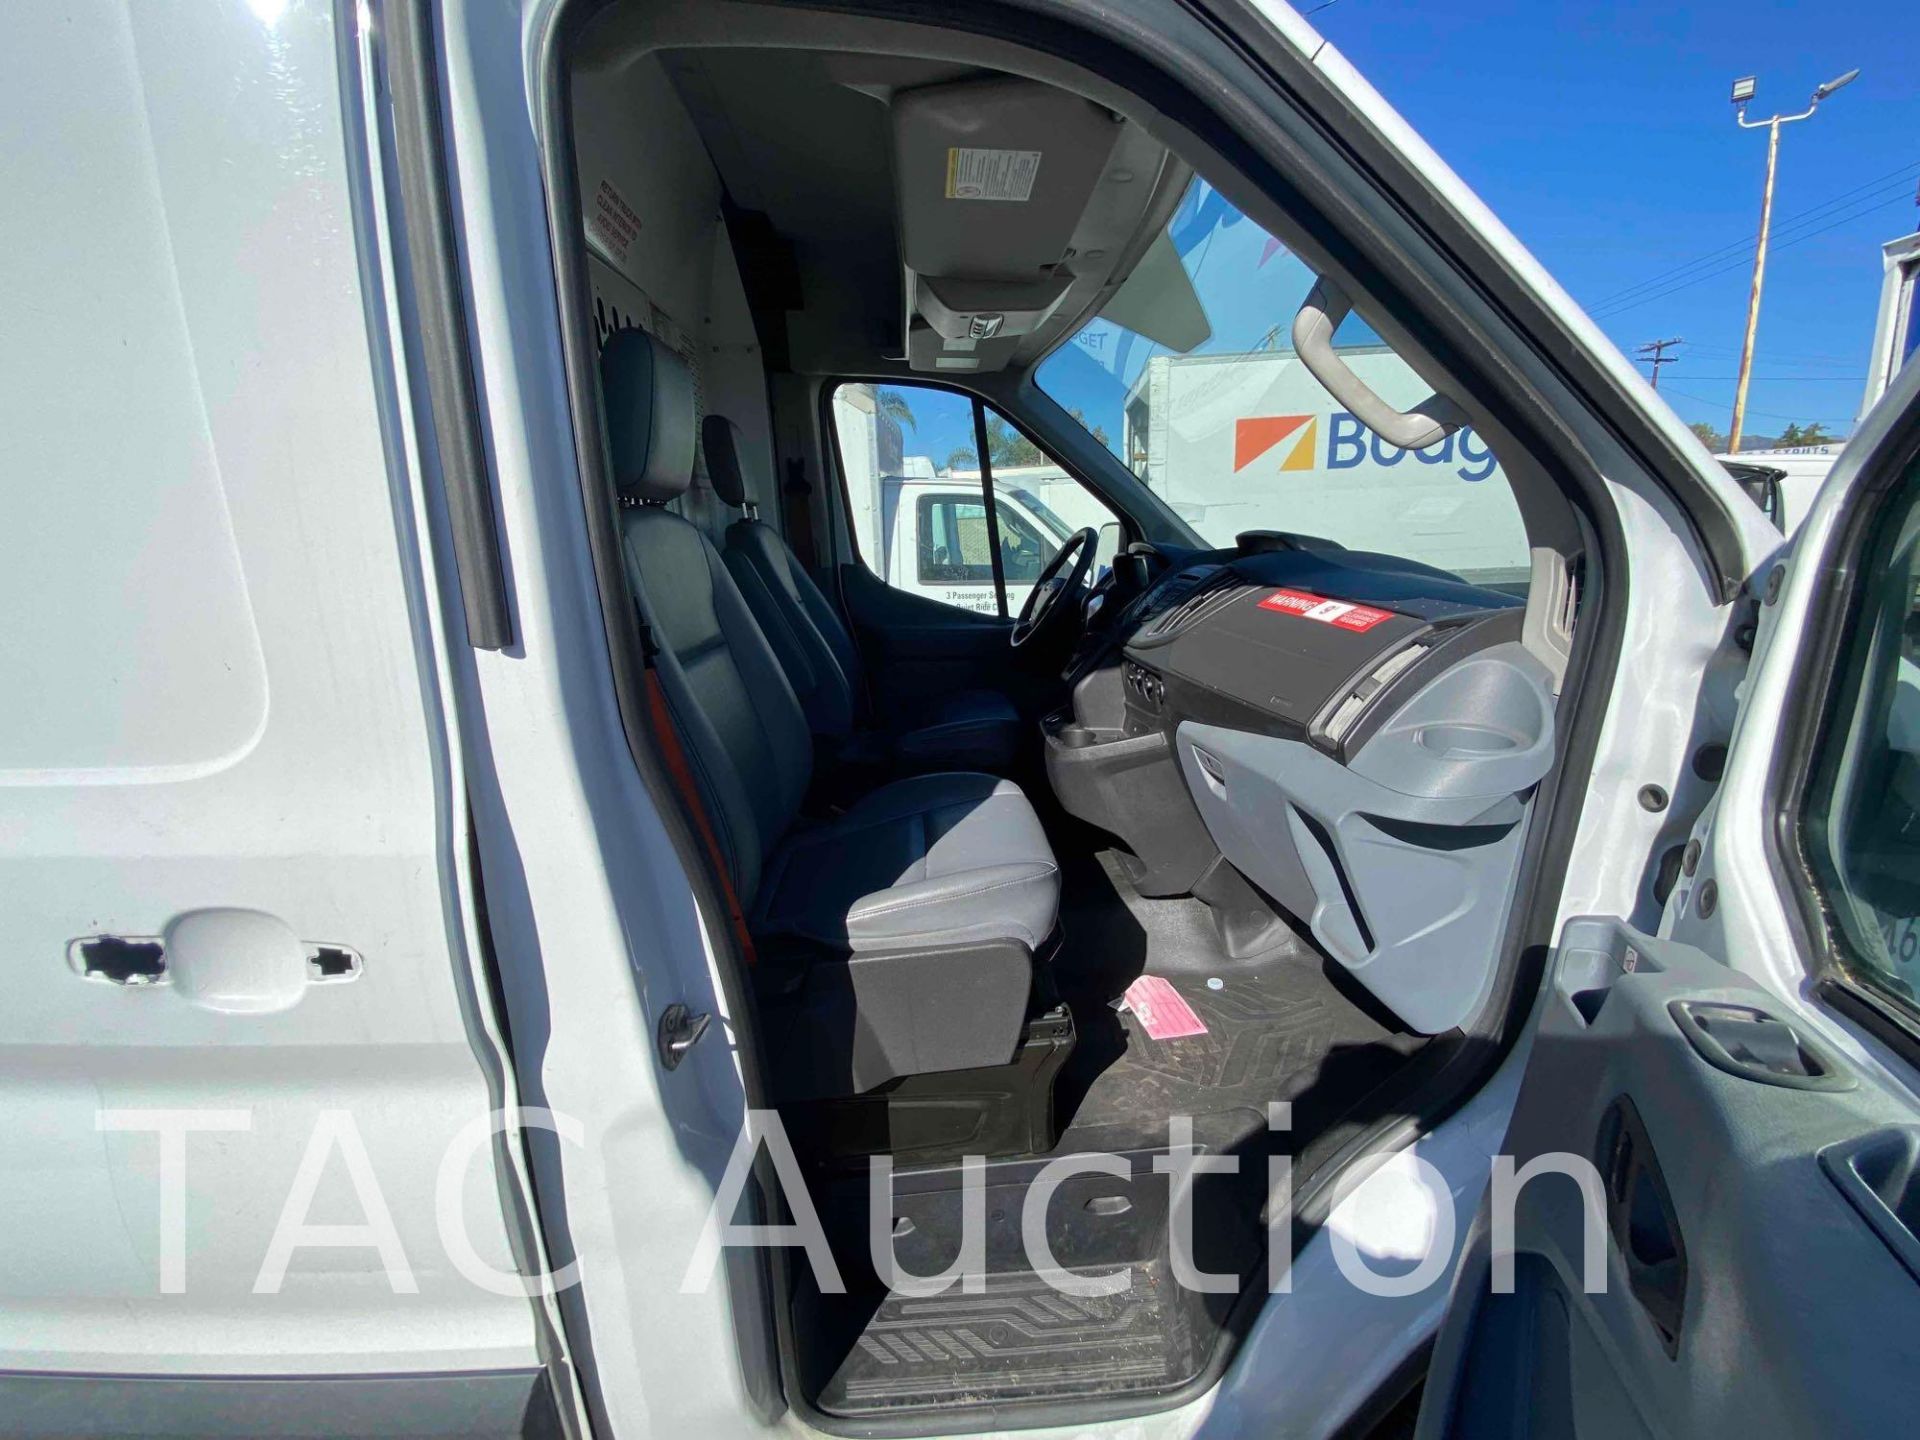 2019 Ford Transit 150 Cargo Van - Image 26 of 56